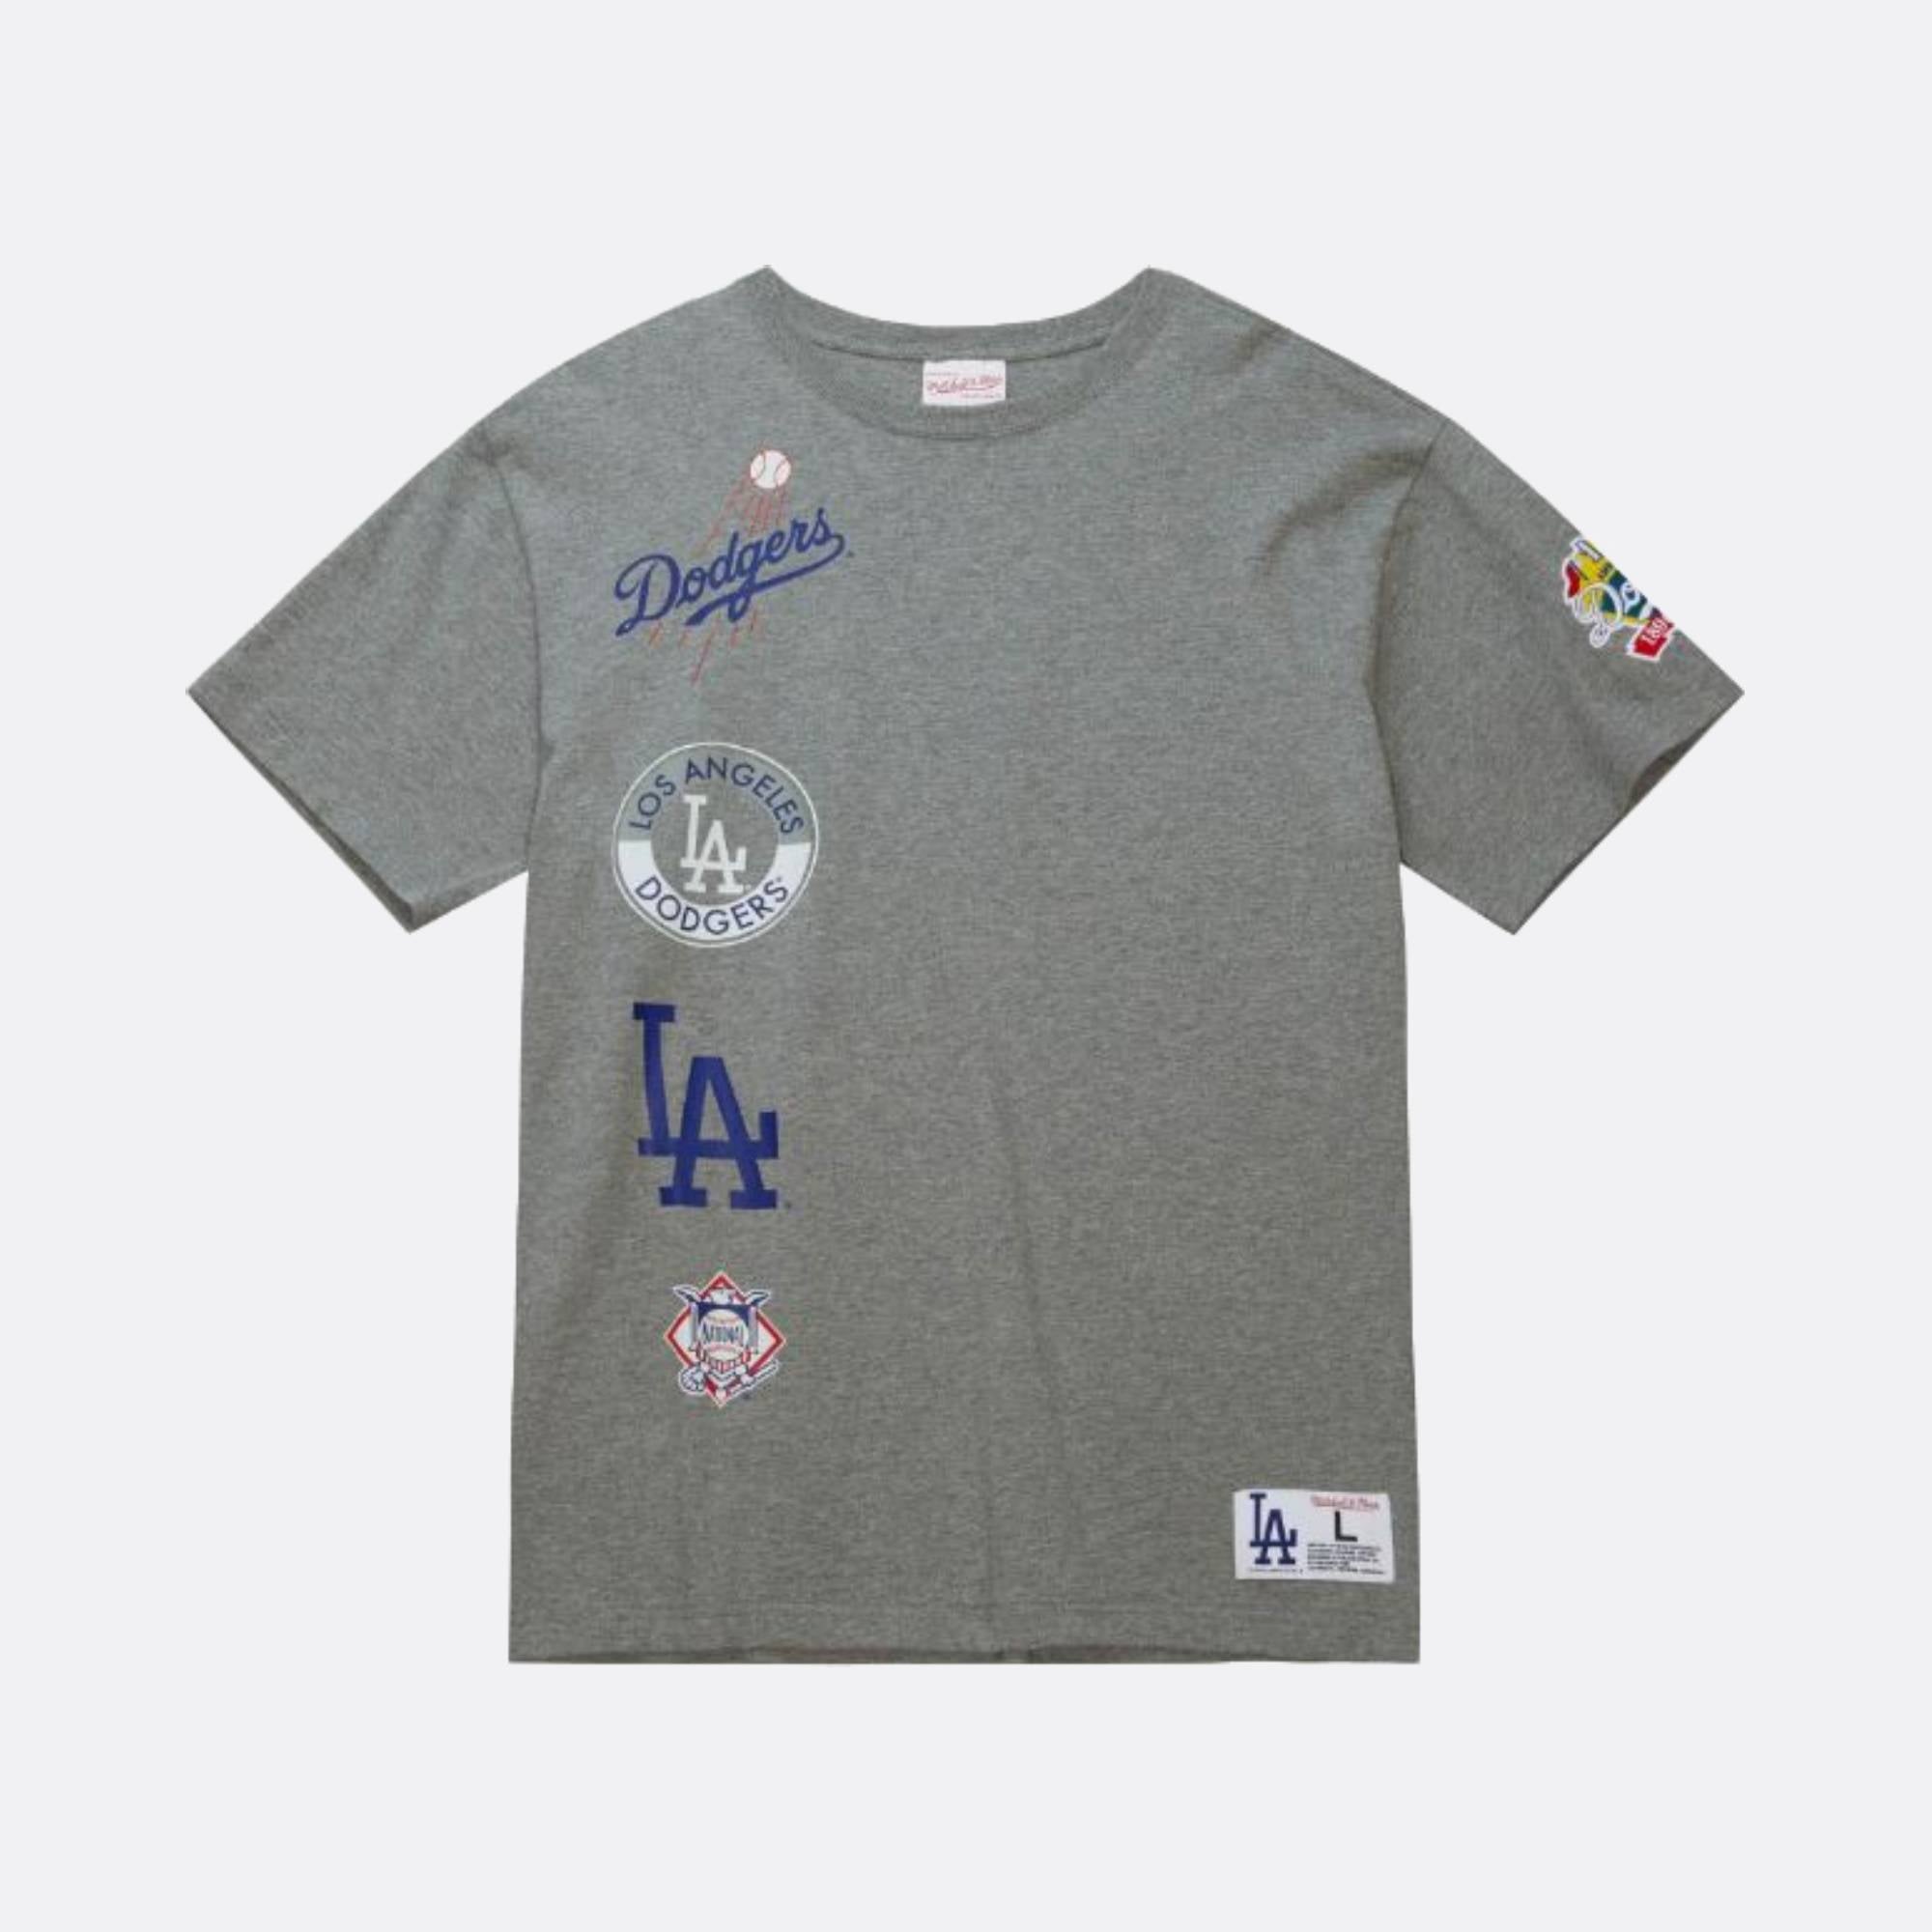  Dodgers Shirt Men